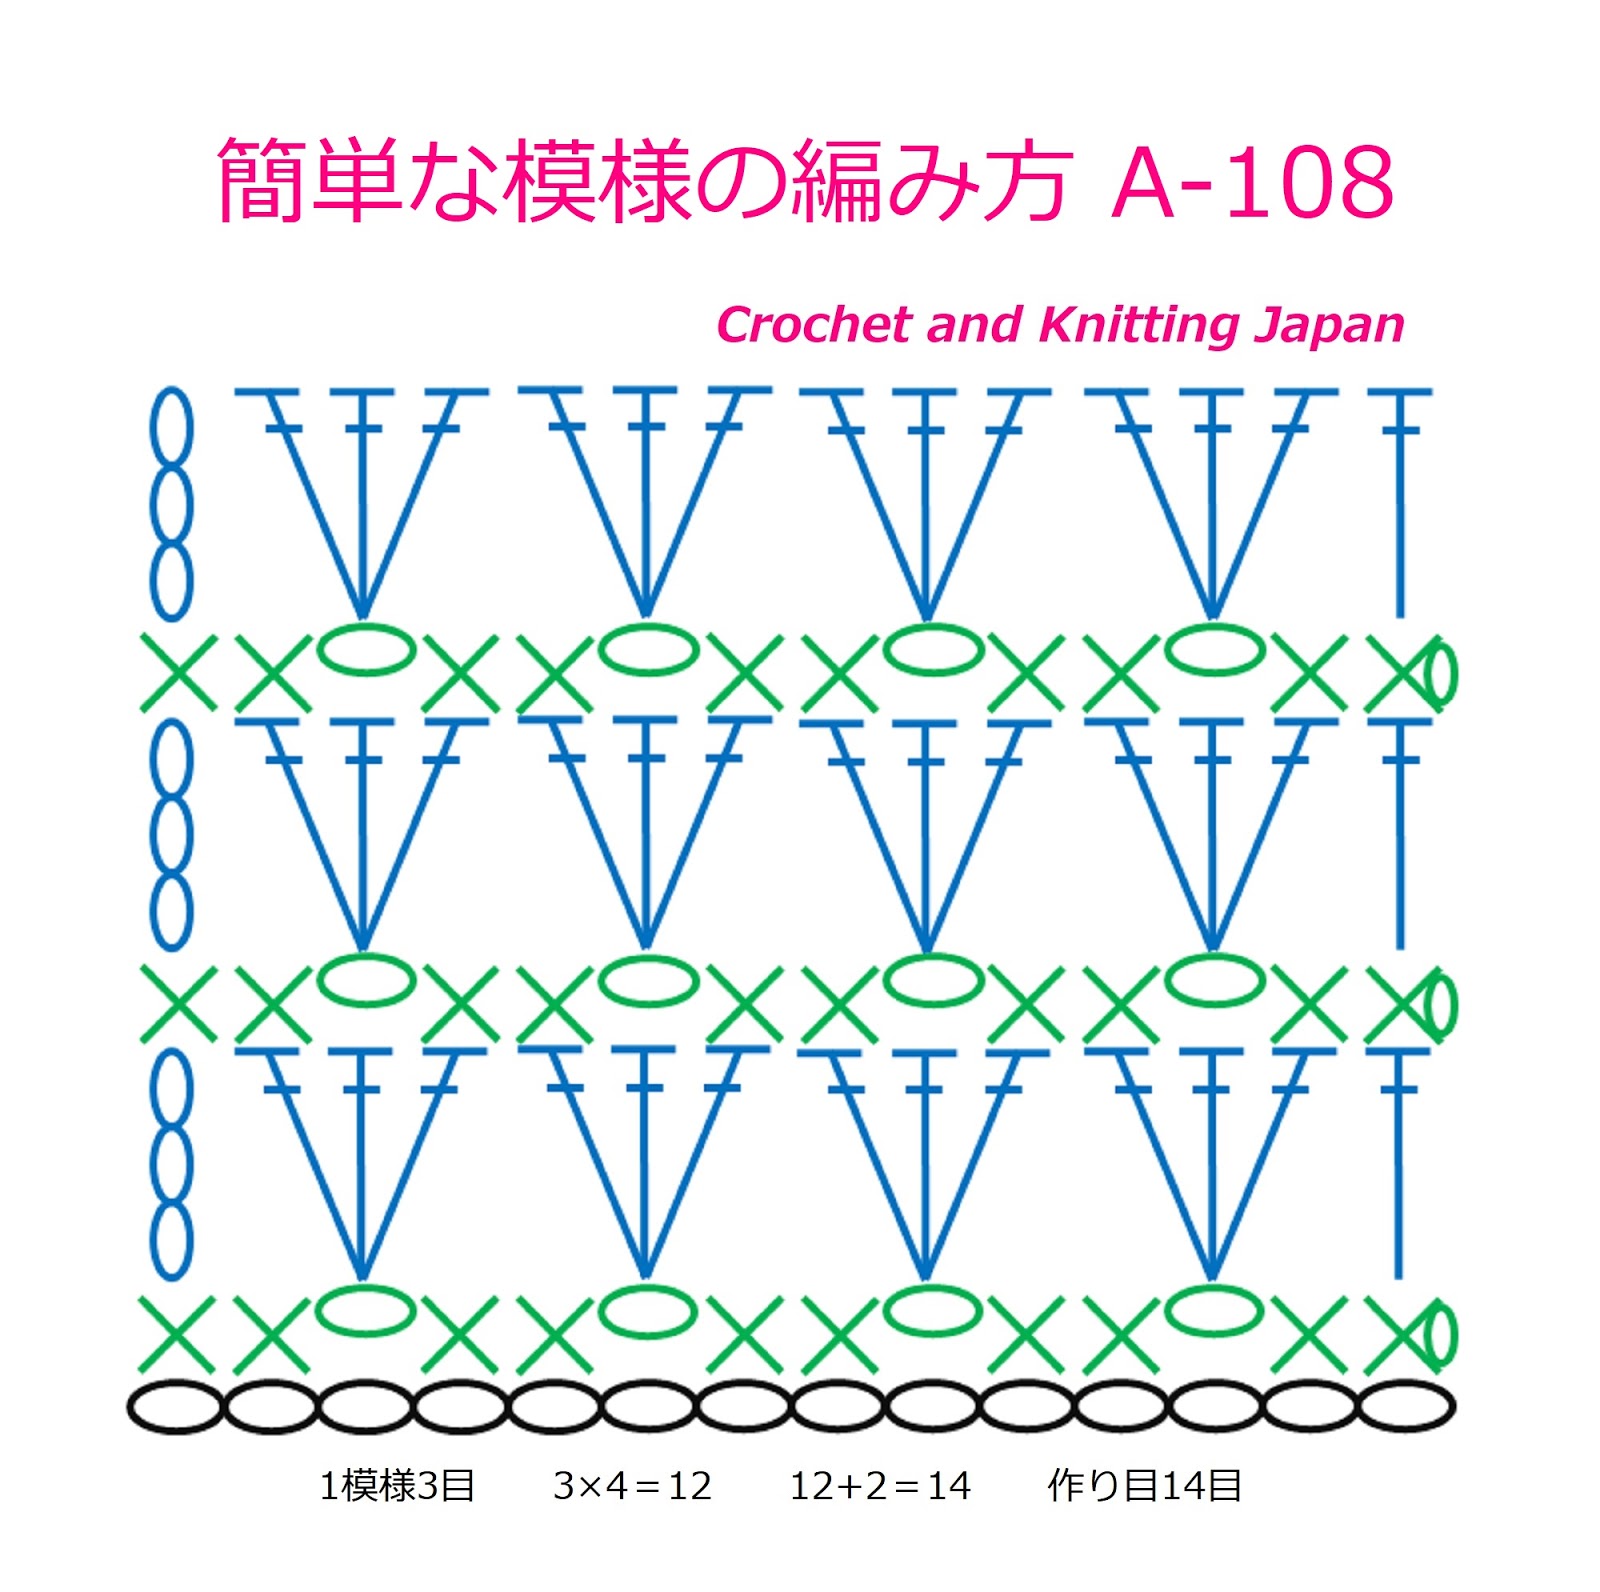 かぎ編み Crochet Japan クロッシェジャパン 簡単な模様の編み方 A 108 かぎ編み初心者さん Easy Crochet Stitch